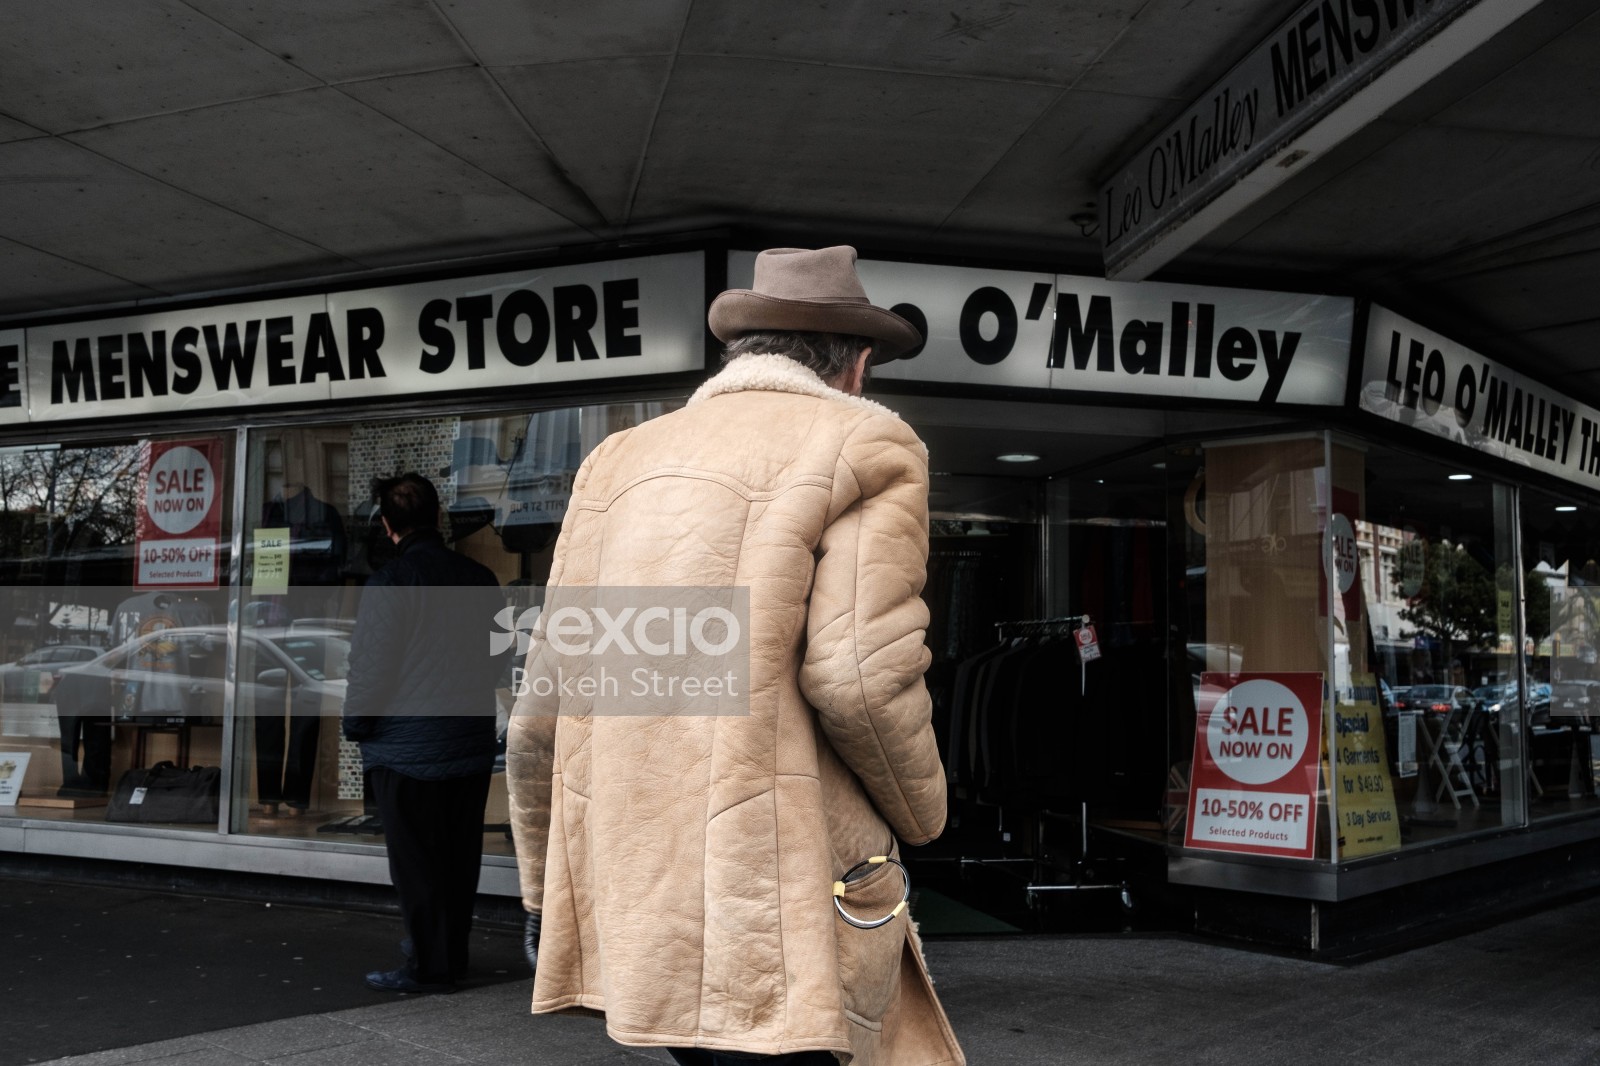 Man walking towards menswear store